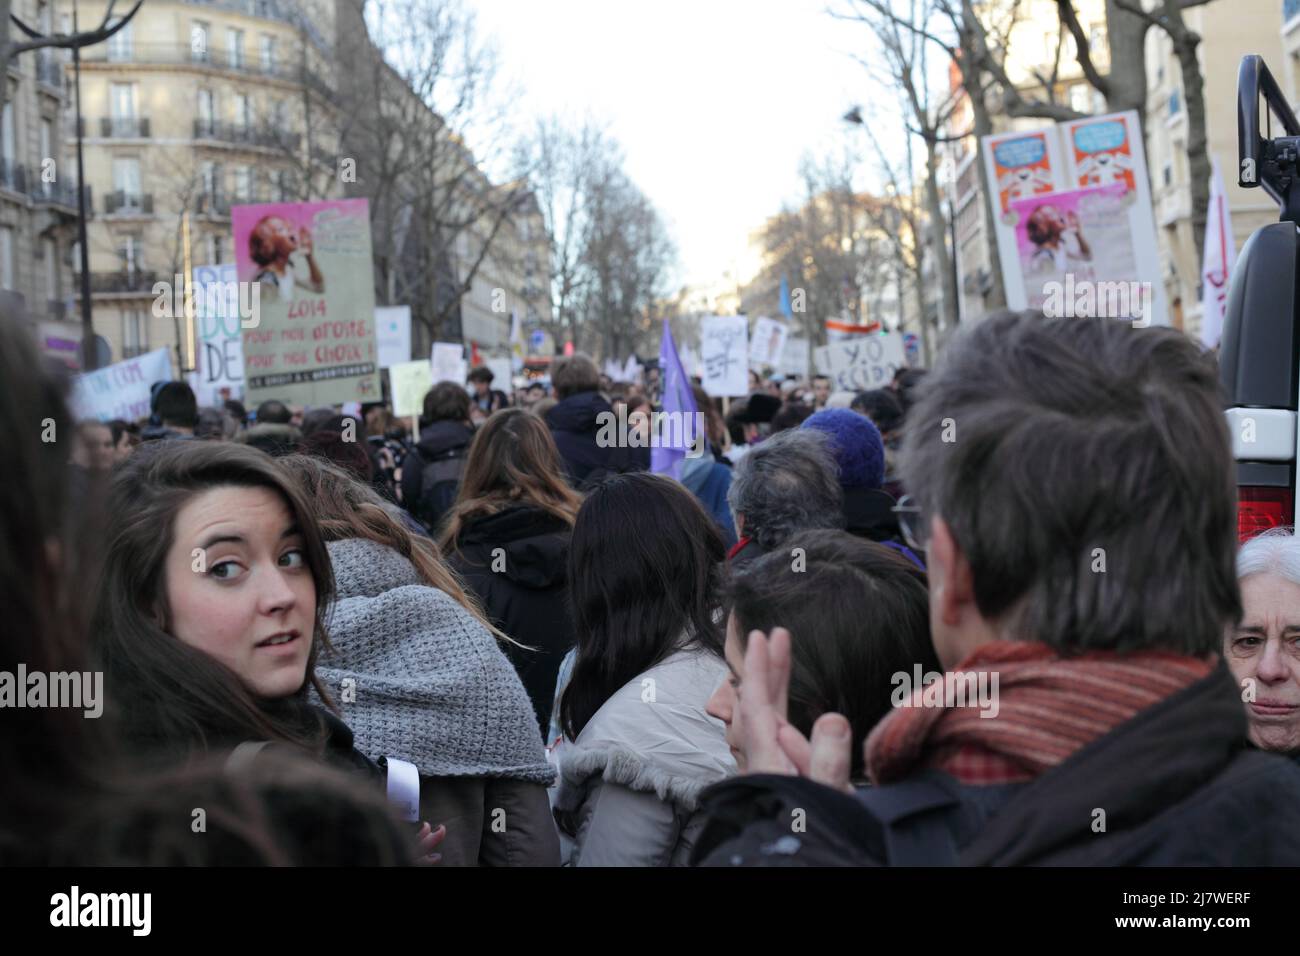 Paris : Manifestation contre le projet de loi anti-avortement en Espagne 01er février 2014. Regard de femme qui se retourne dans la foule Stockfoto